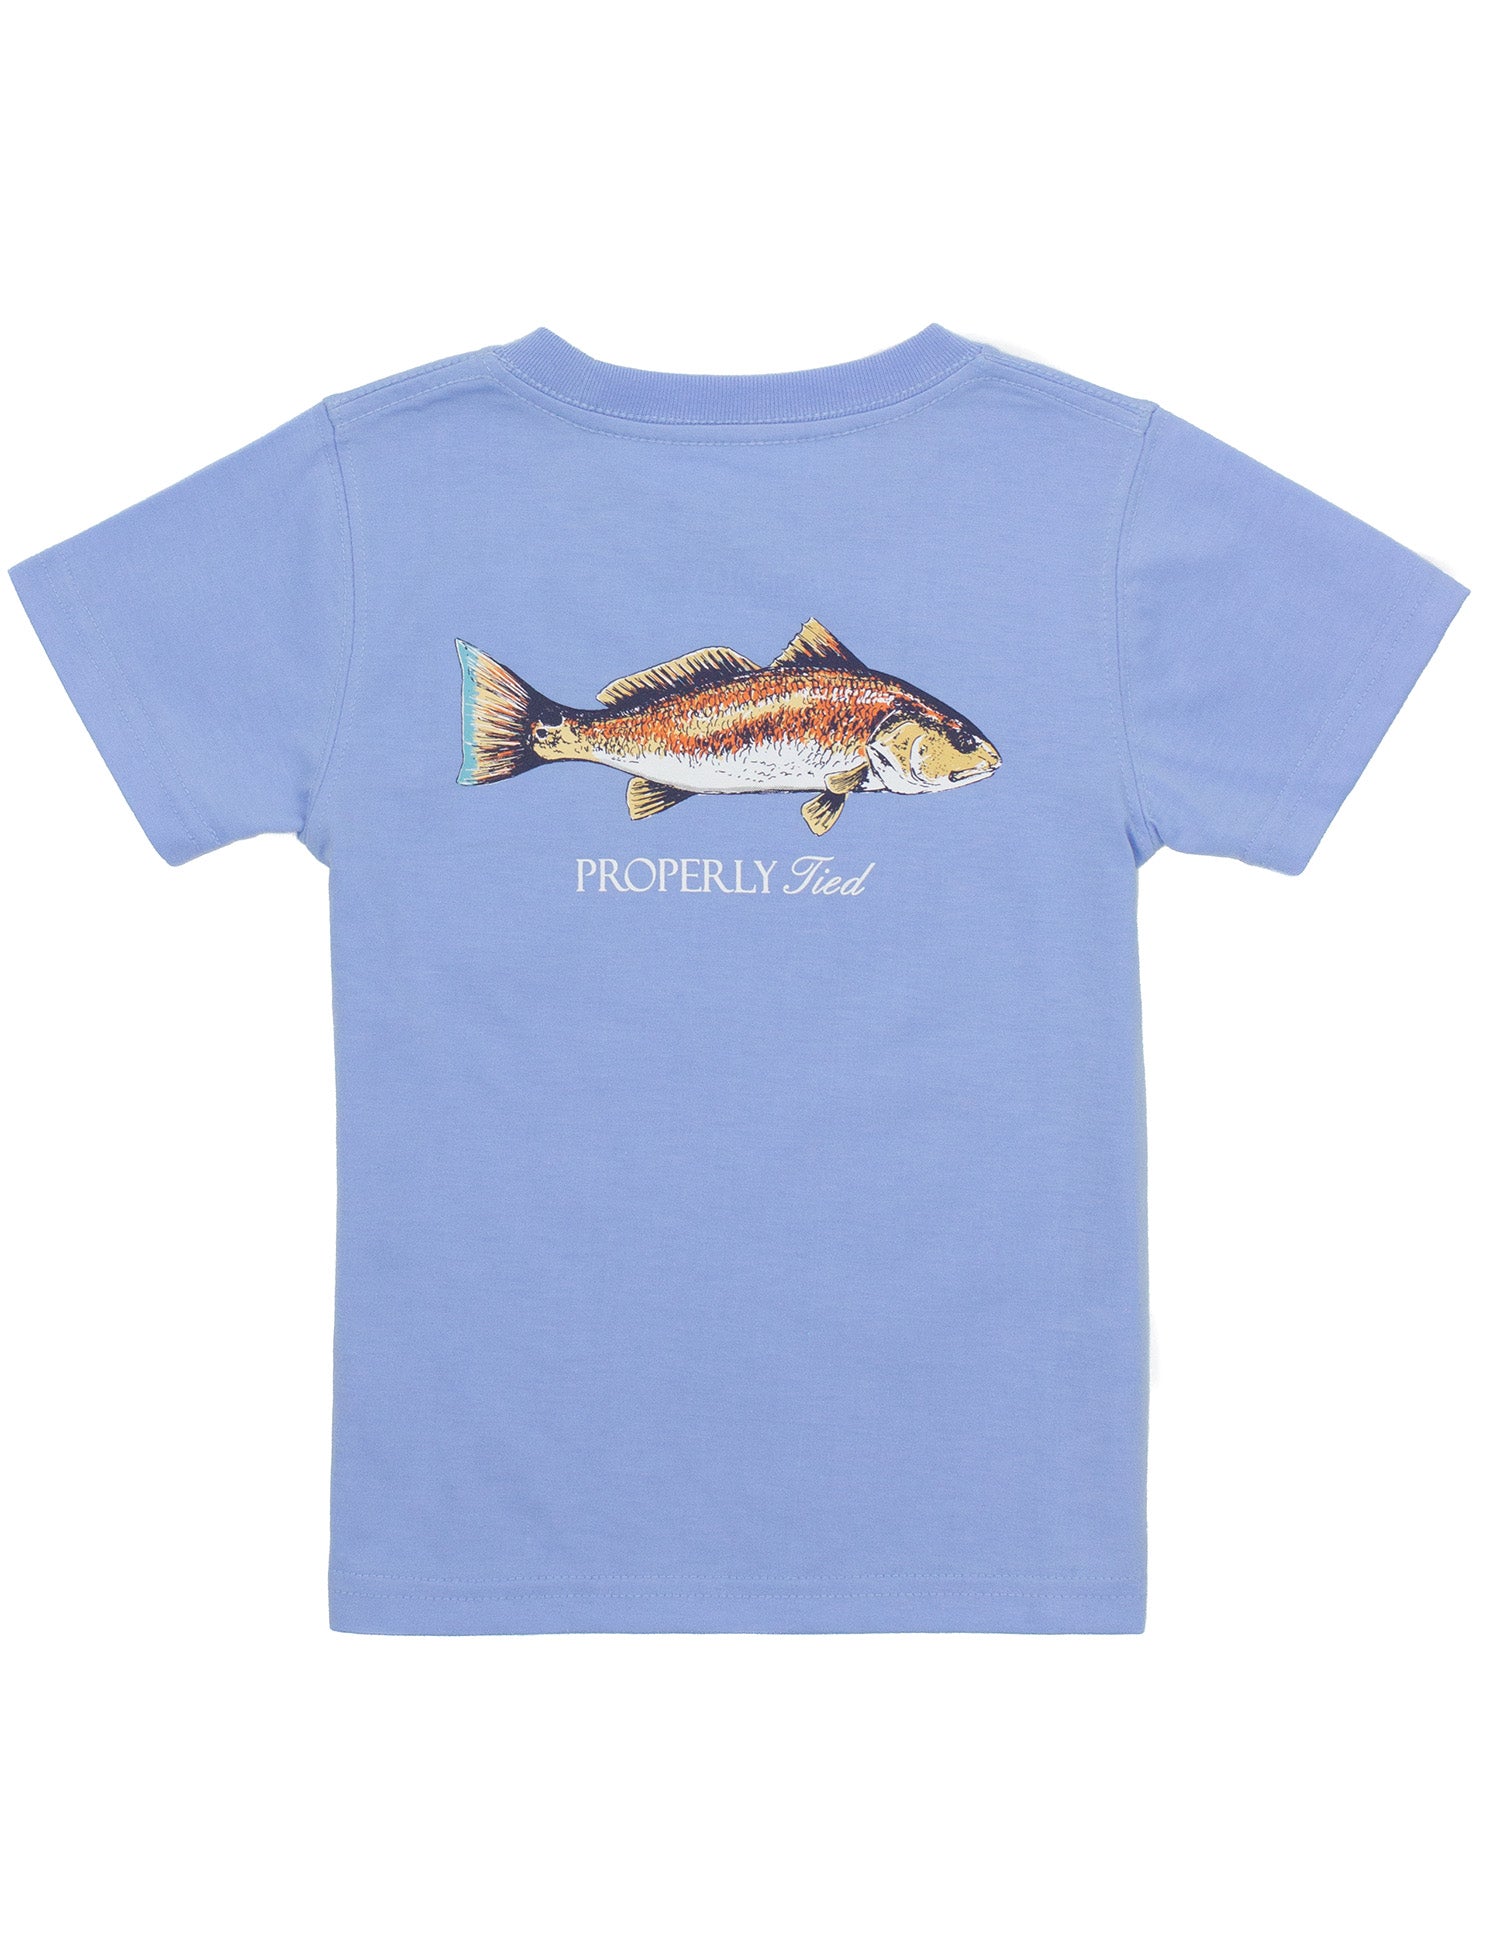 Redfish on Light Blue Tee